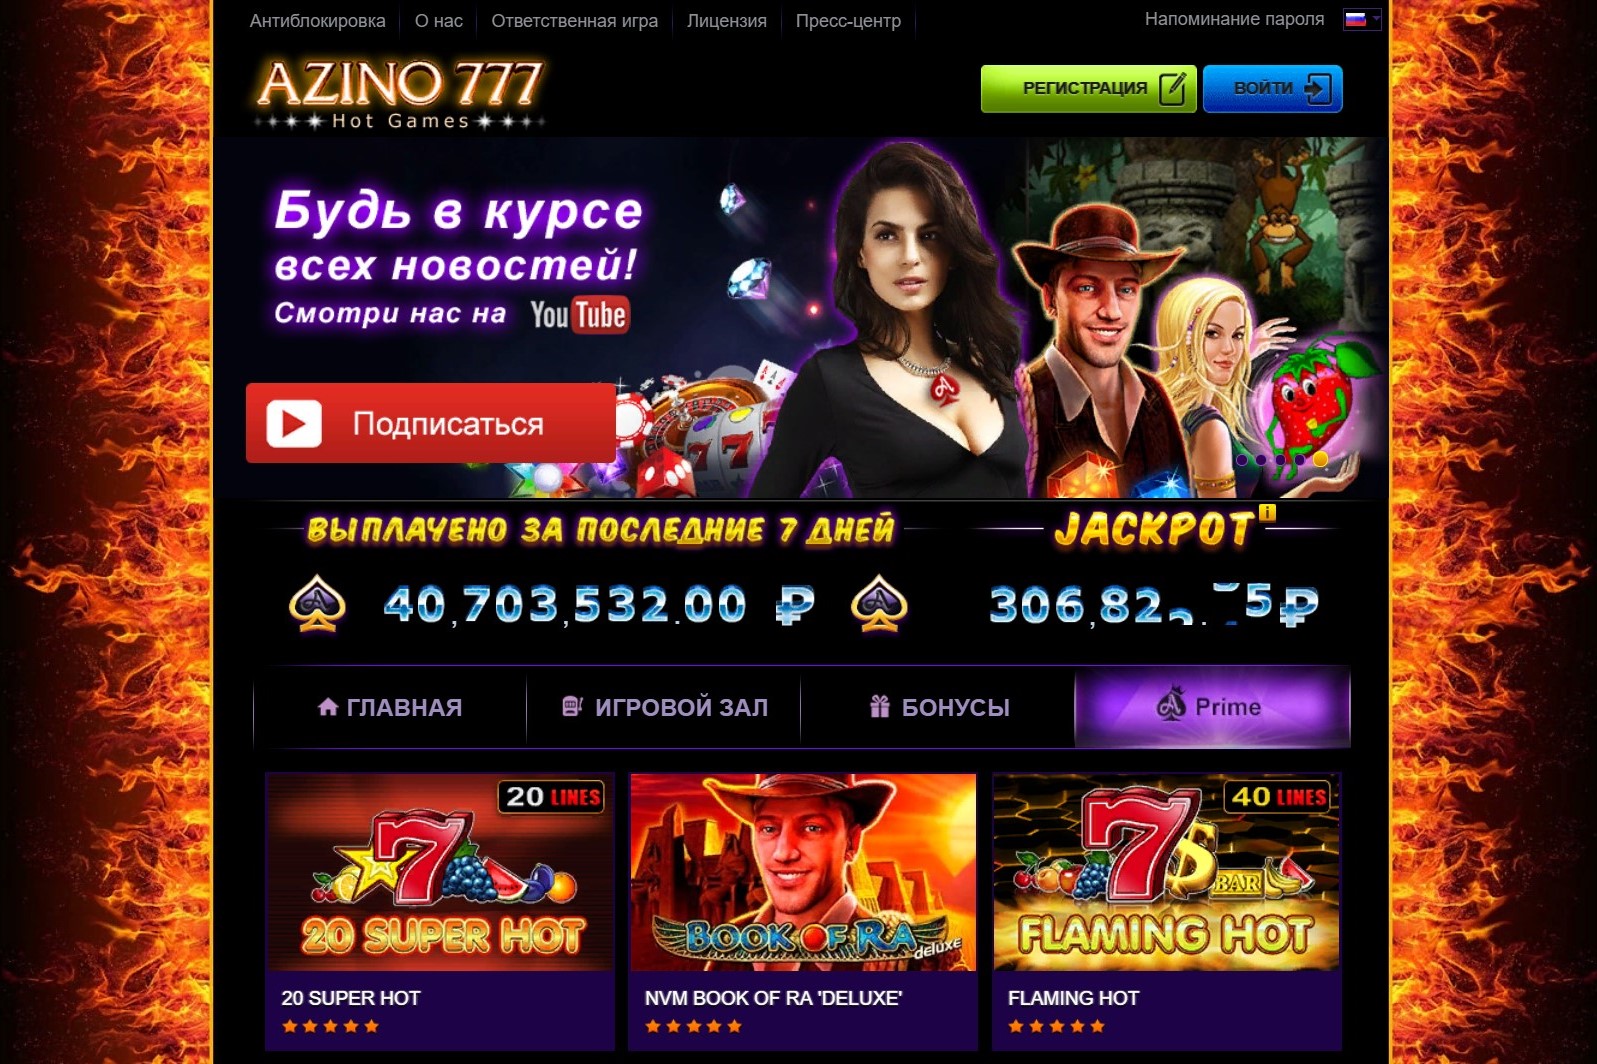 Казино 777 игровые автоматы официальный сайт скачать бесплатно gaminator эмулятор игровых автоматов